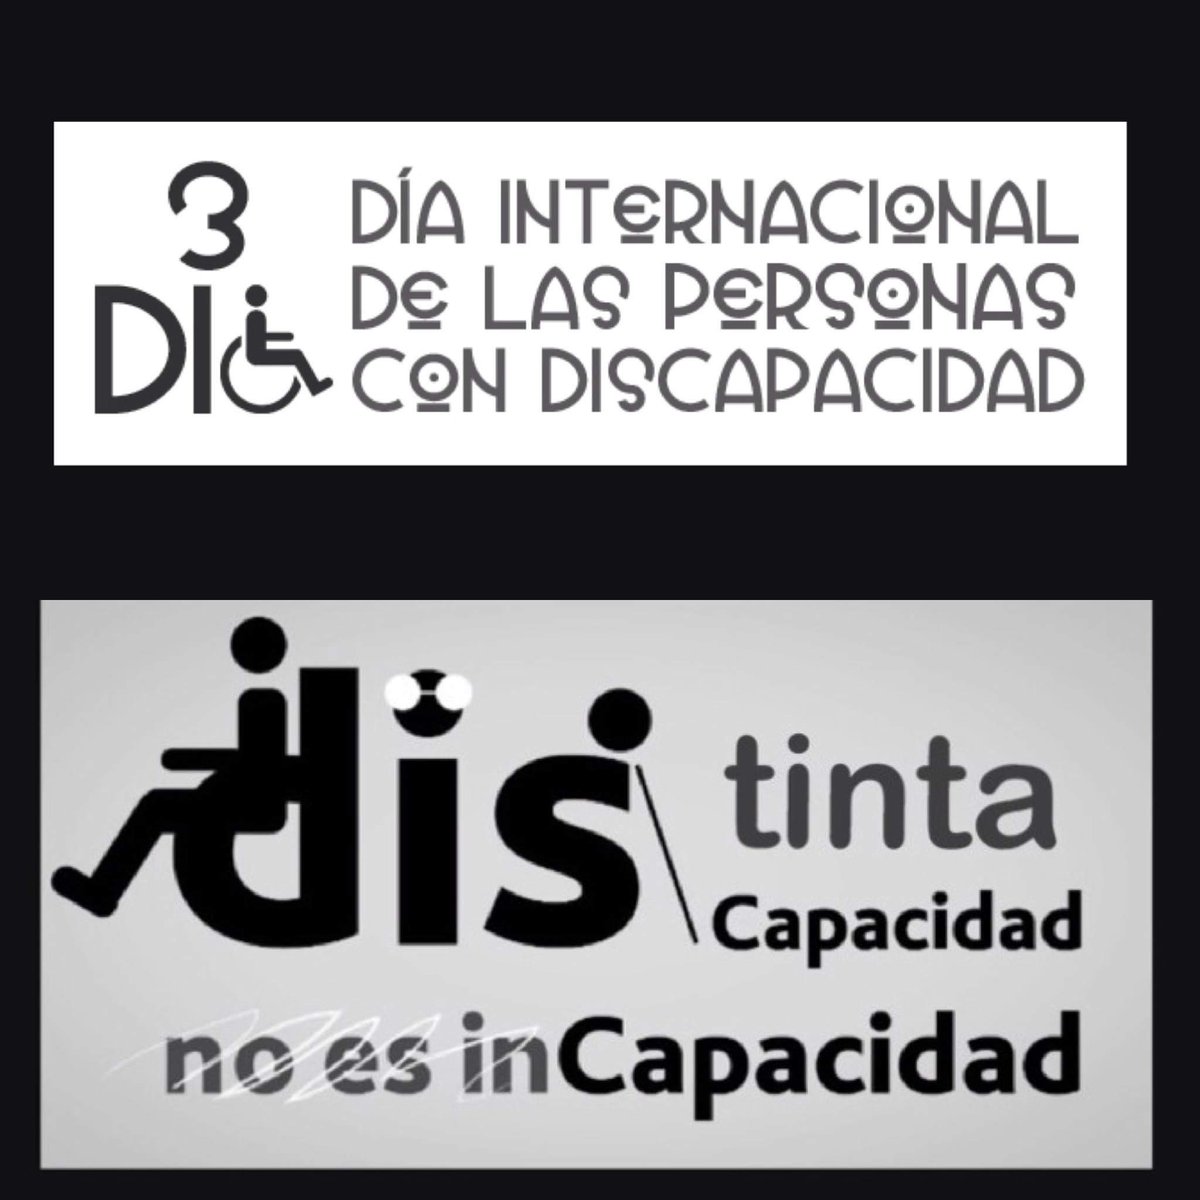 #DistintaCapacidad no es DisCapacidad #3dediciembre #DiaInternacionalDiscapacidad